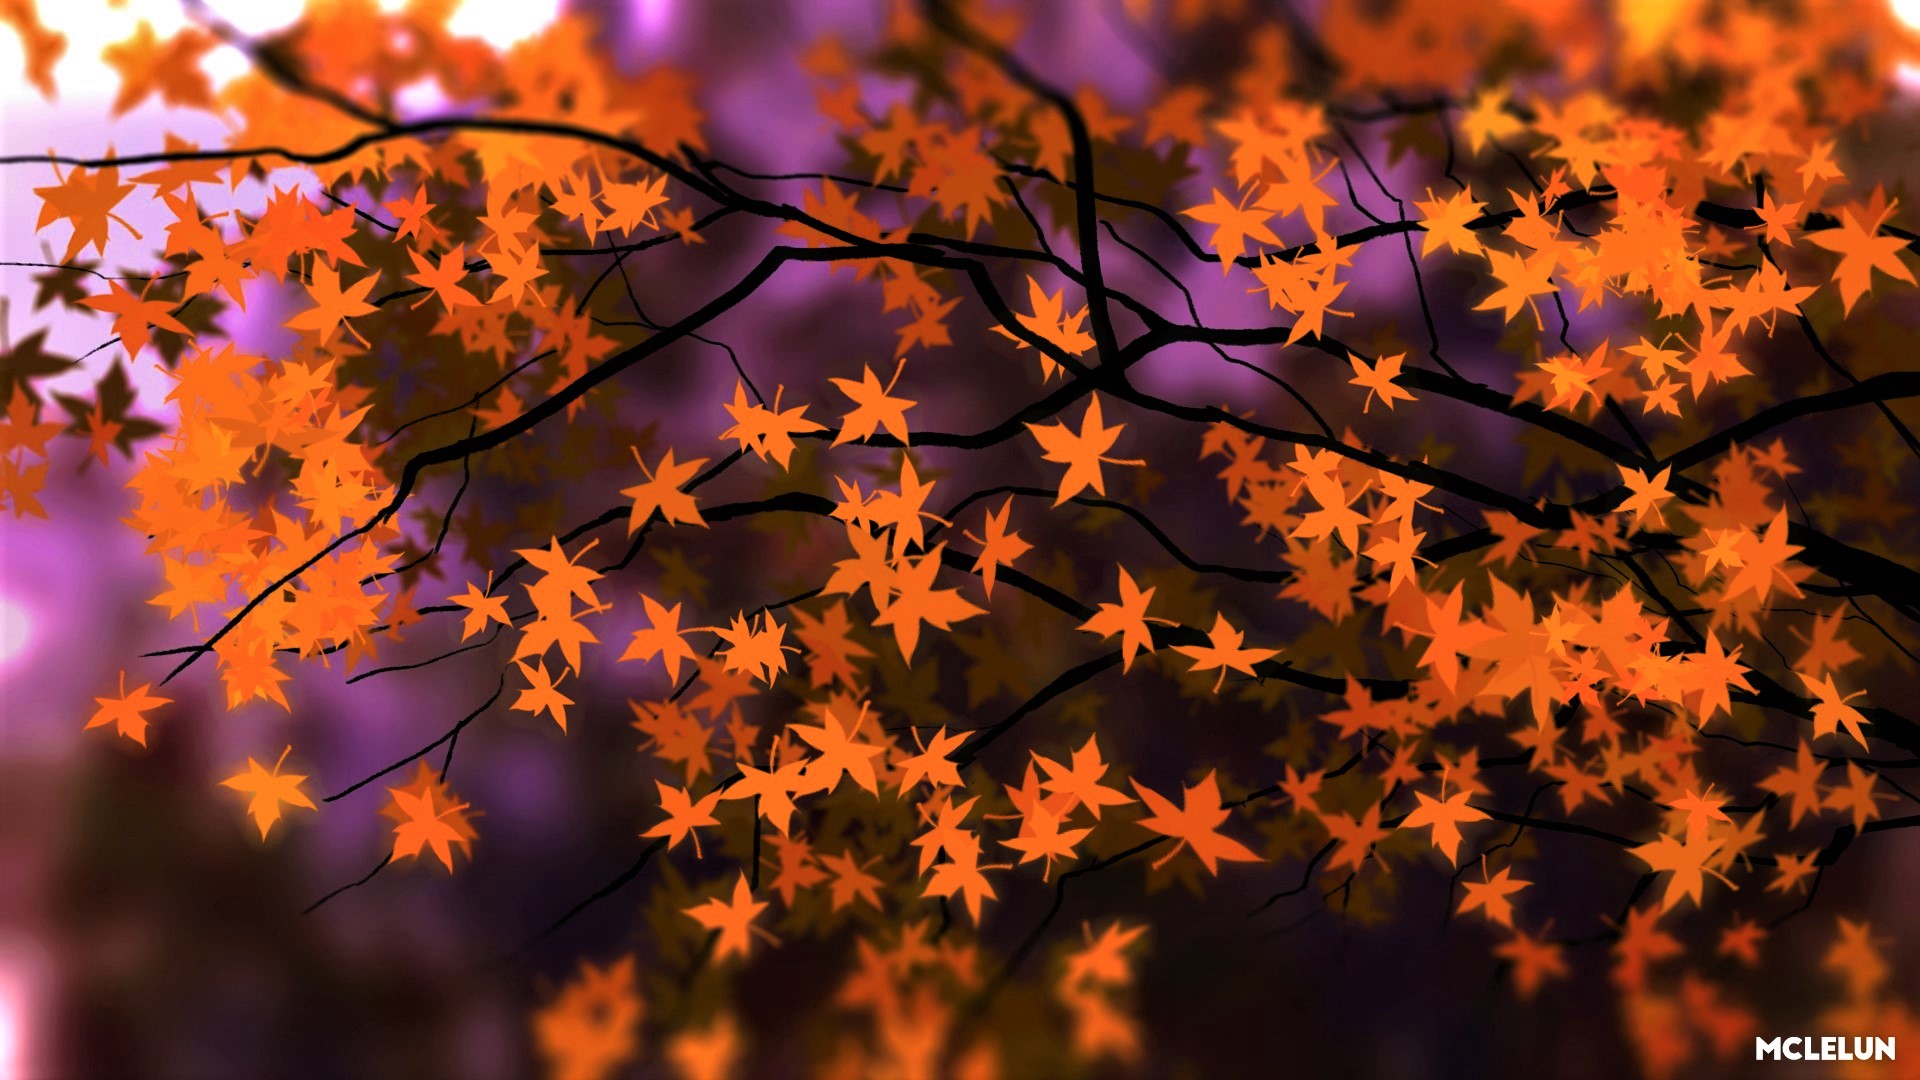 Скачать обои бесплатно Осень, Лист, Кленовый Лист, Земля/природа, Оранжевый Цвет) картинка на рабочий стол ПК